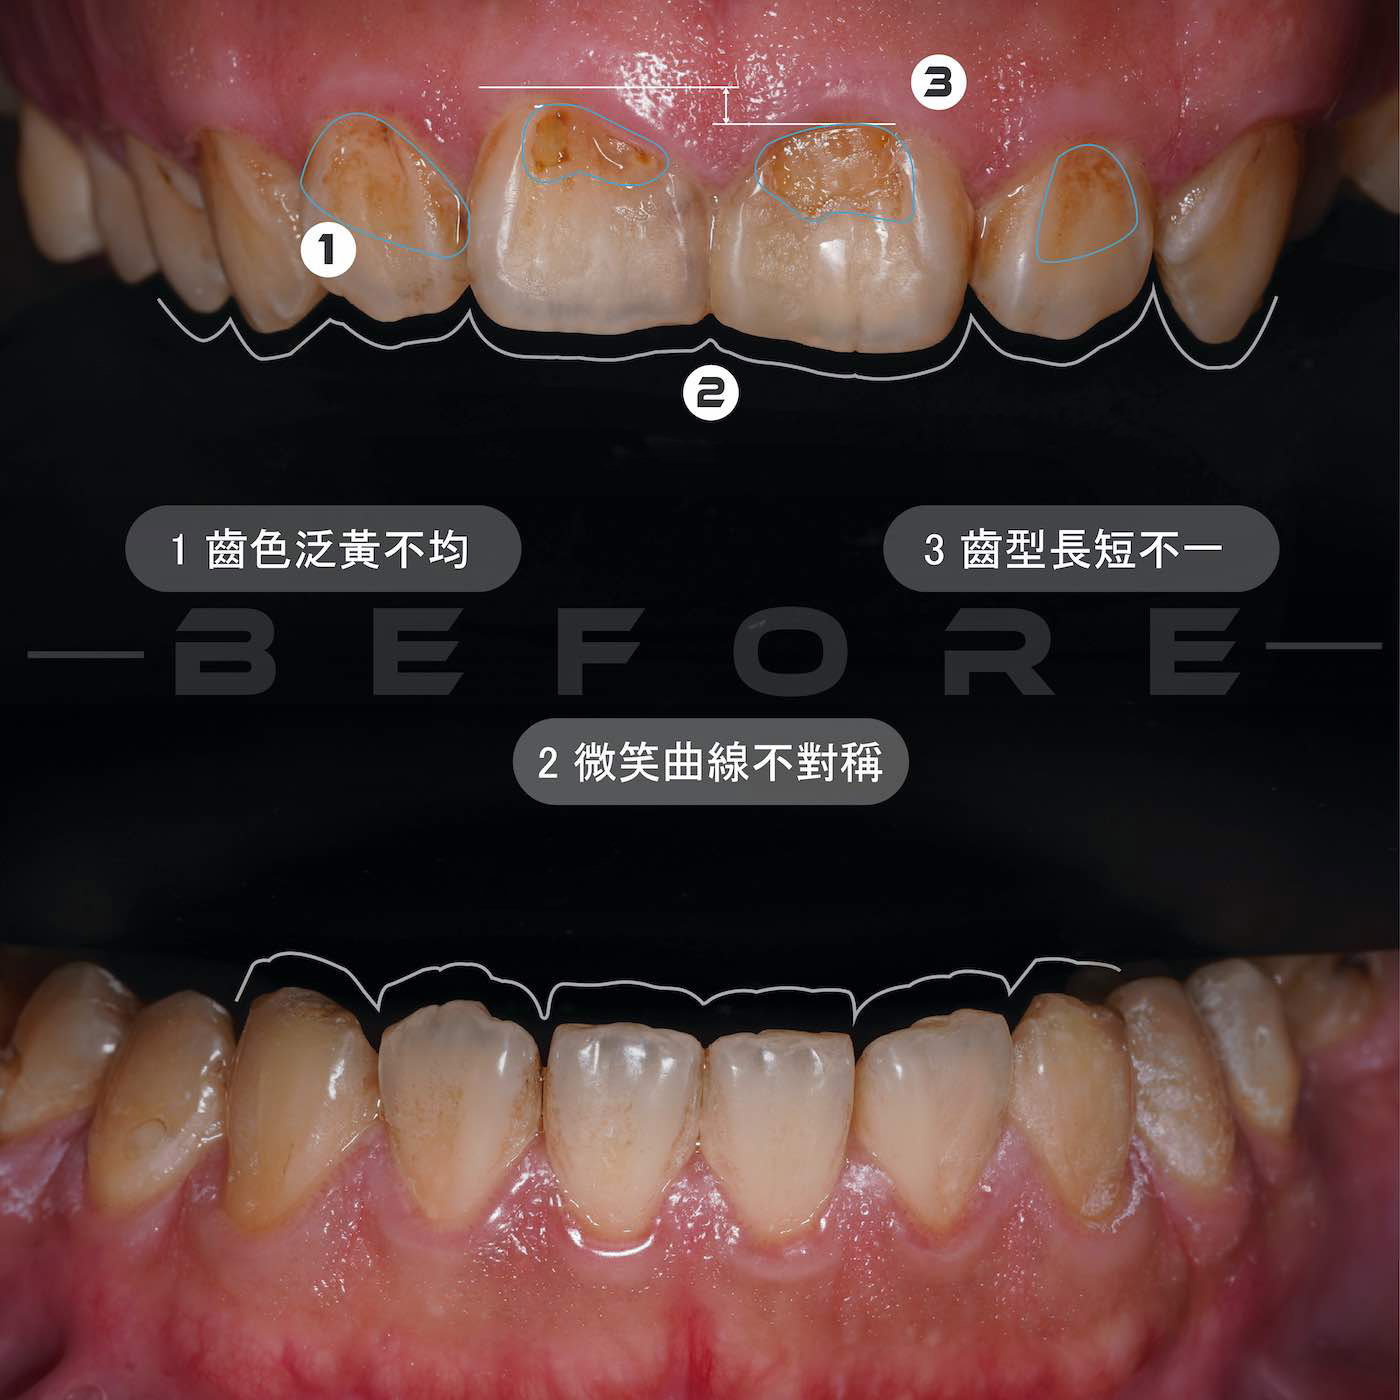 陶瓷貼片療程前的上下排牙齒近照，有牙齒泛黃顏色不均、齒型長短不一、微笑曲線不對稱等問題